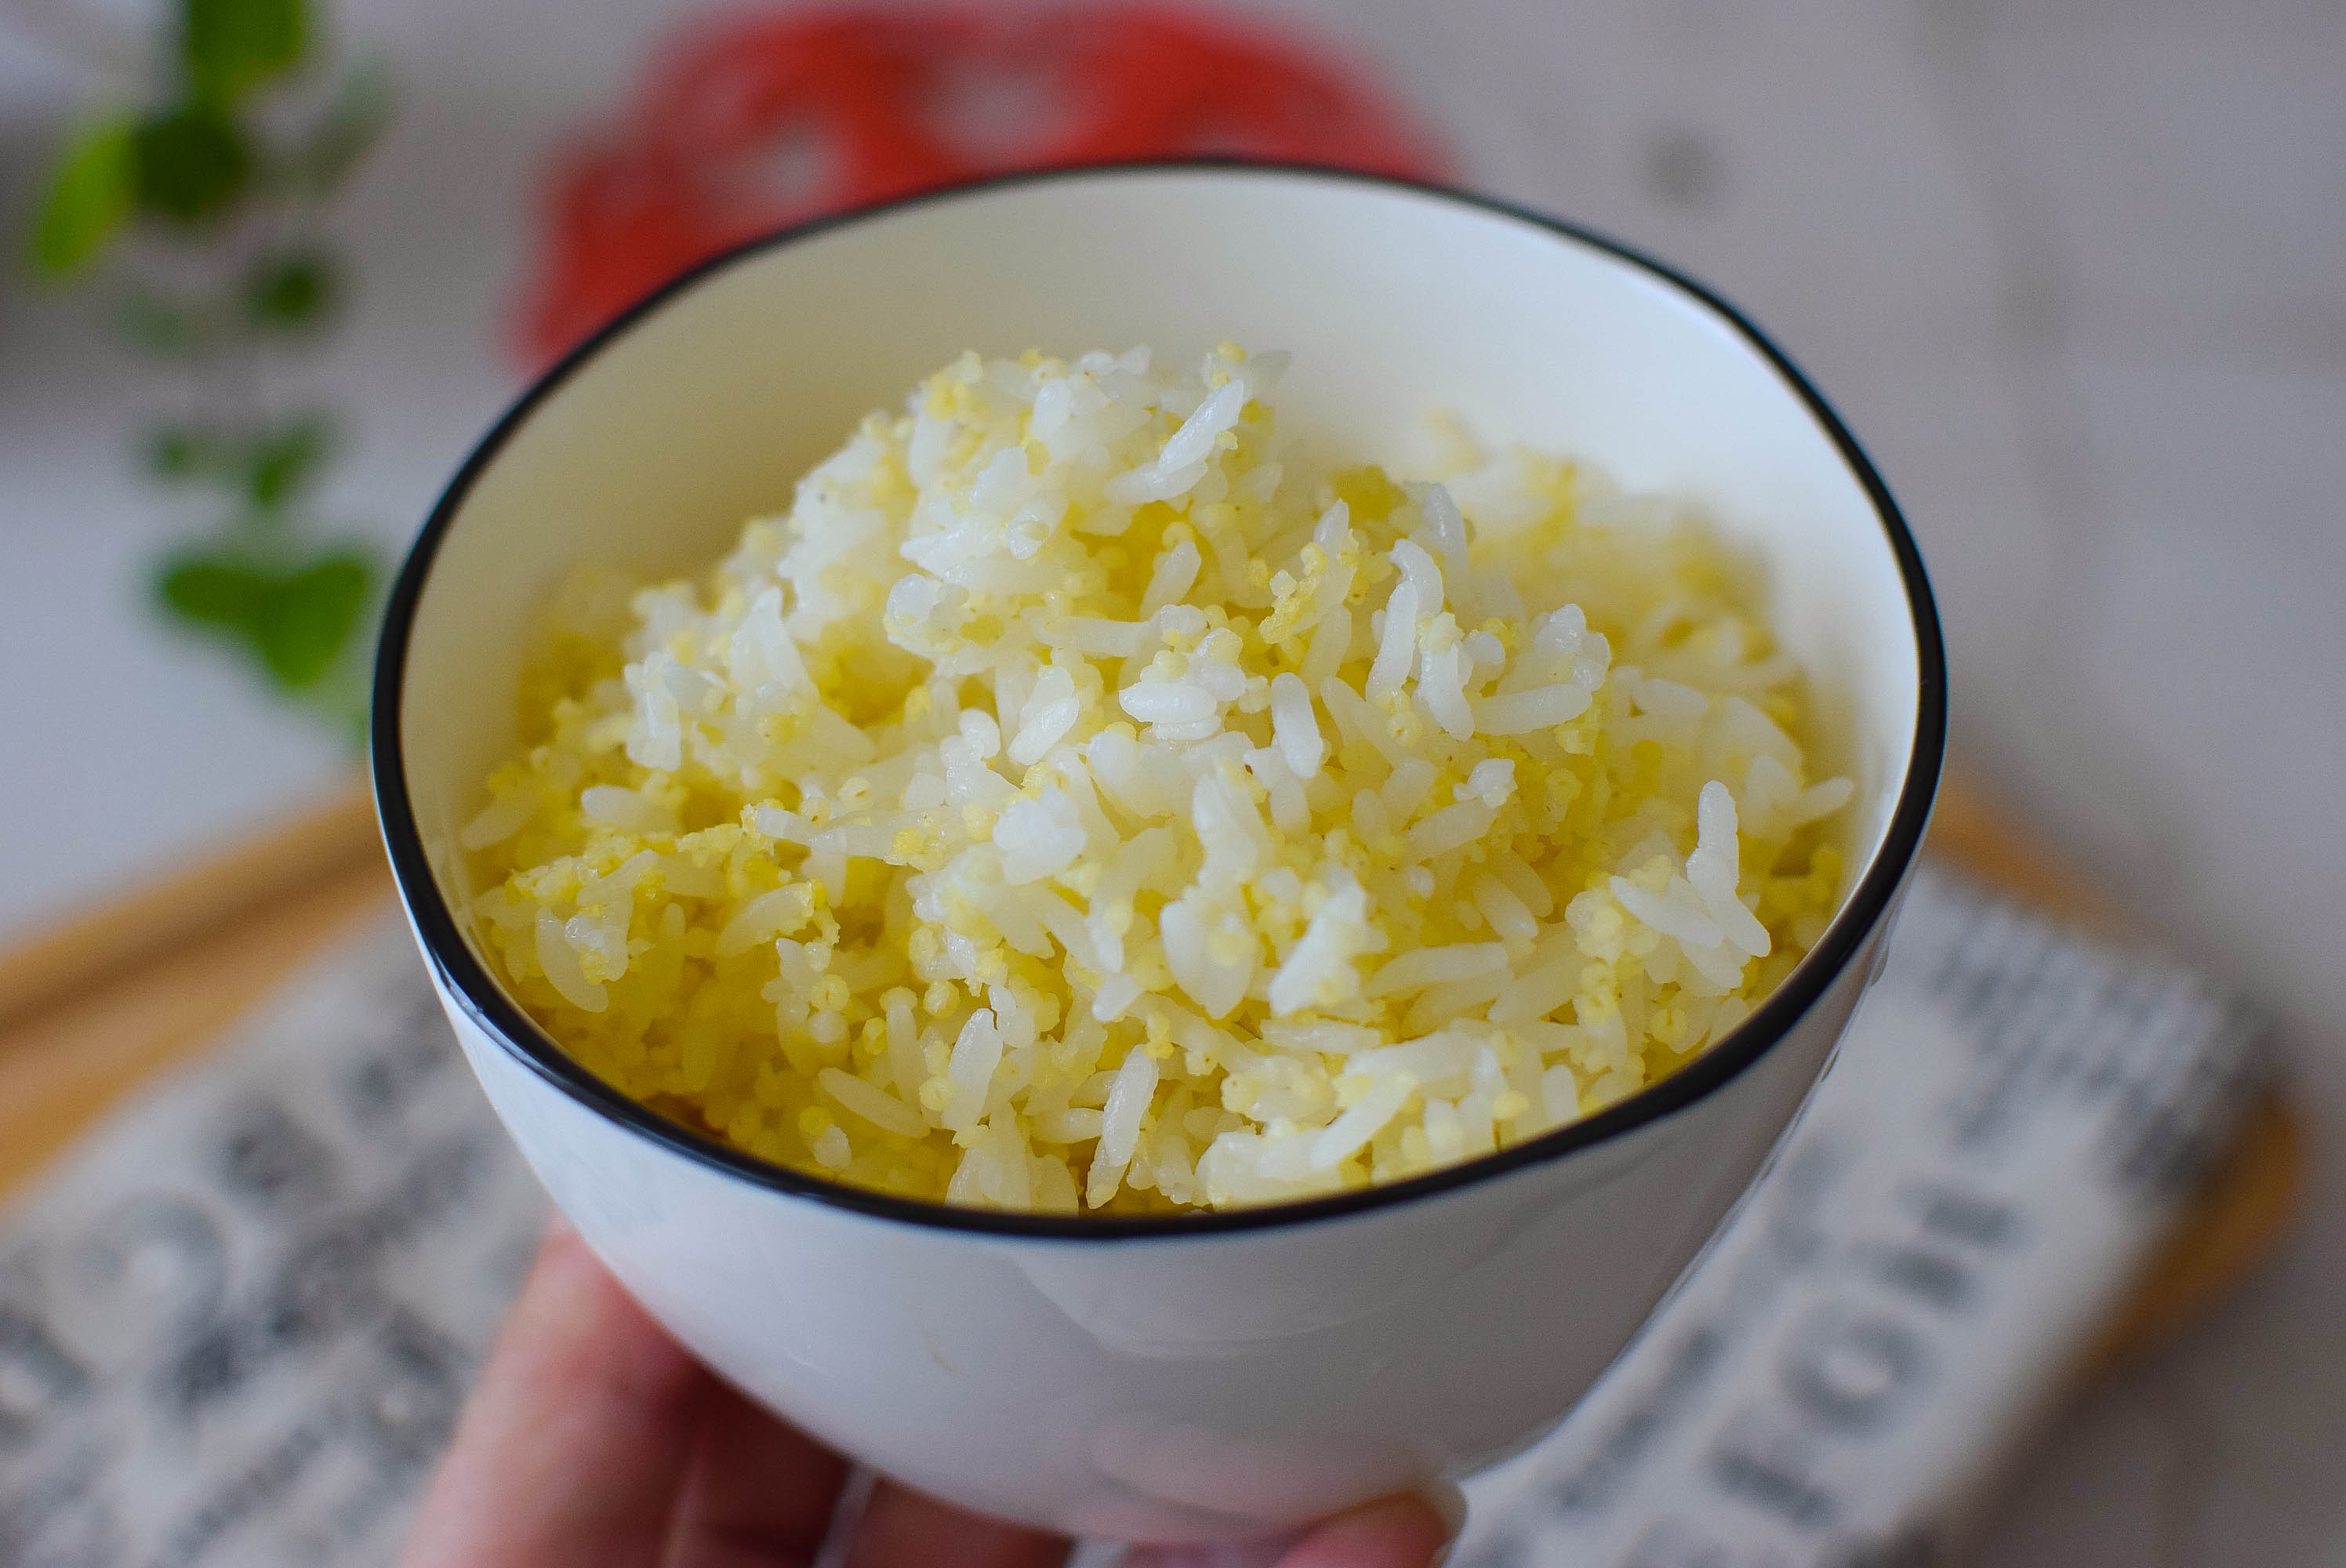 米饭是二米饭,二份大米一份小米一起蒸就可以了,丰富米饭的营养,比